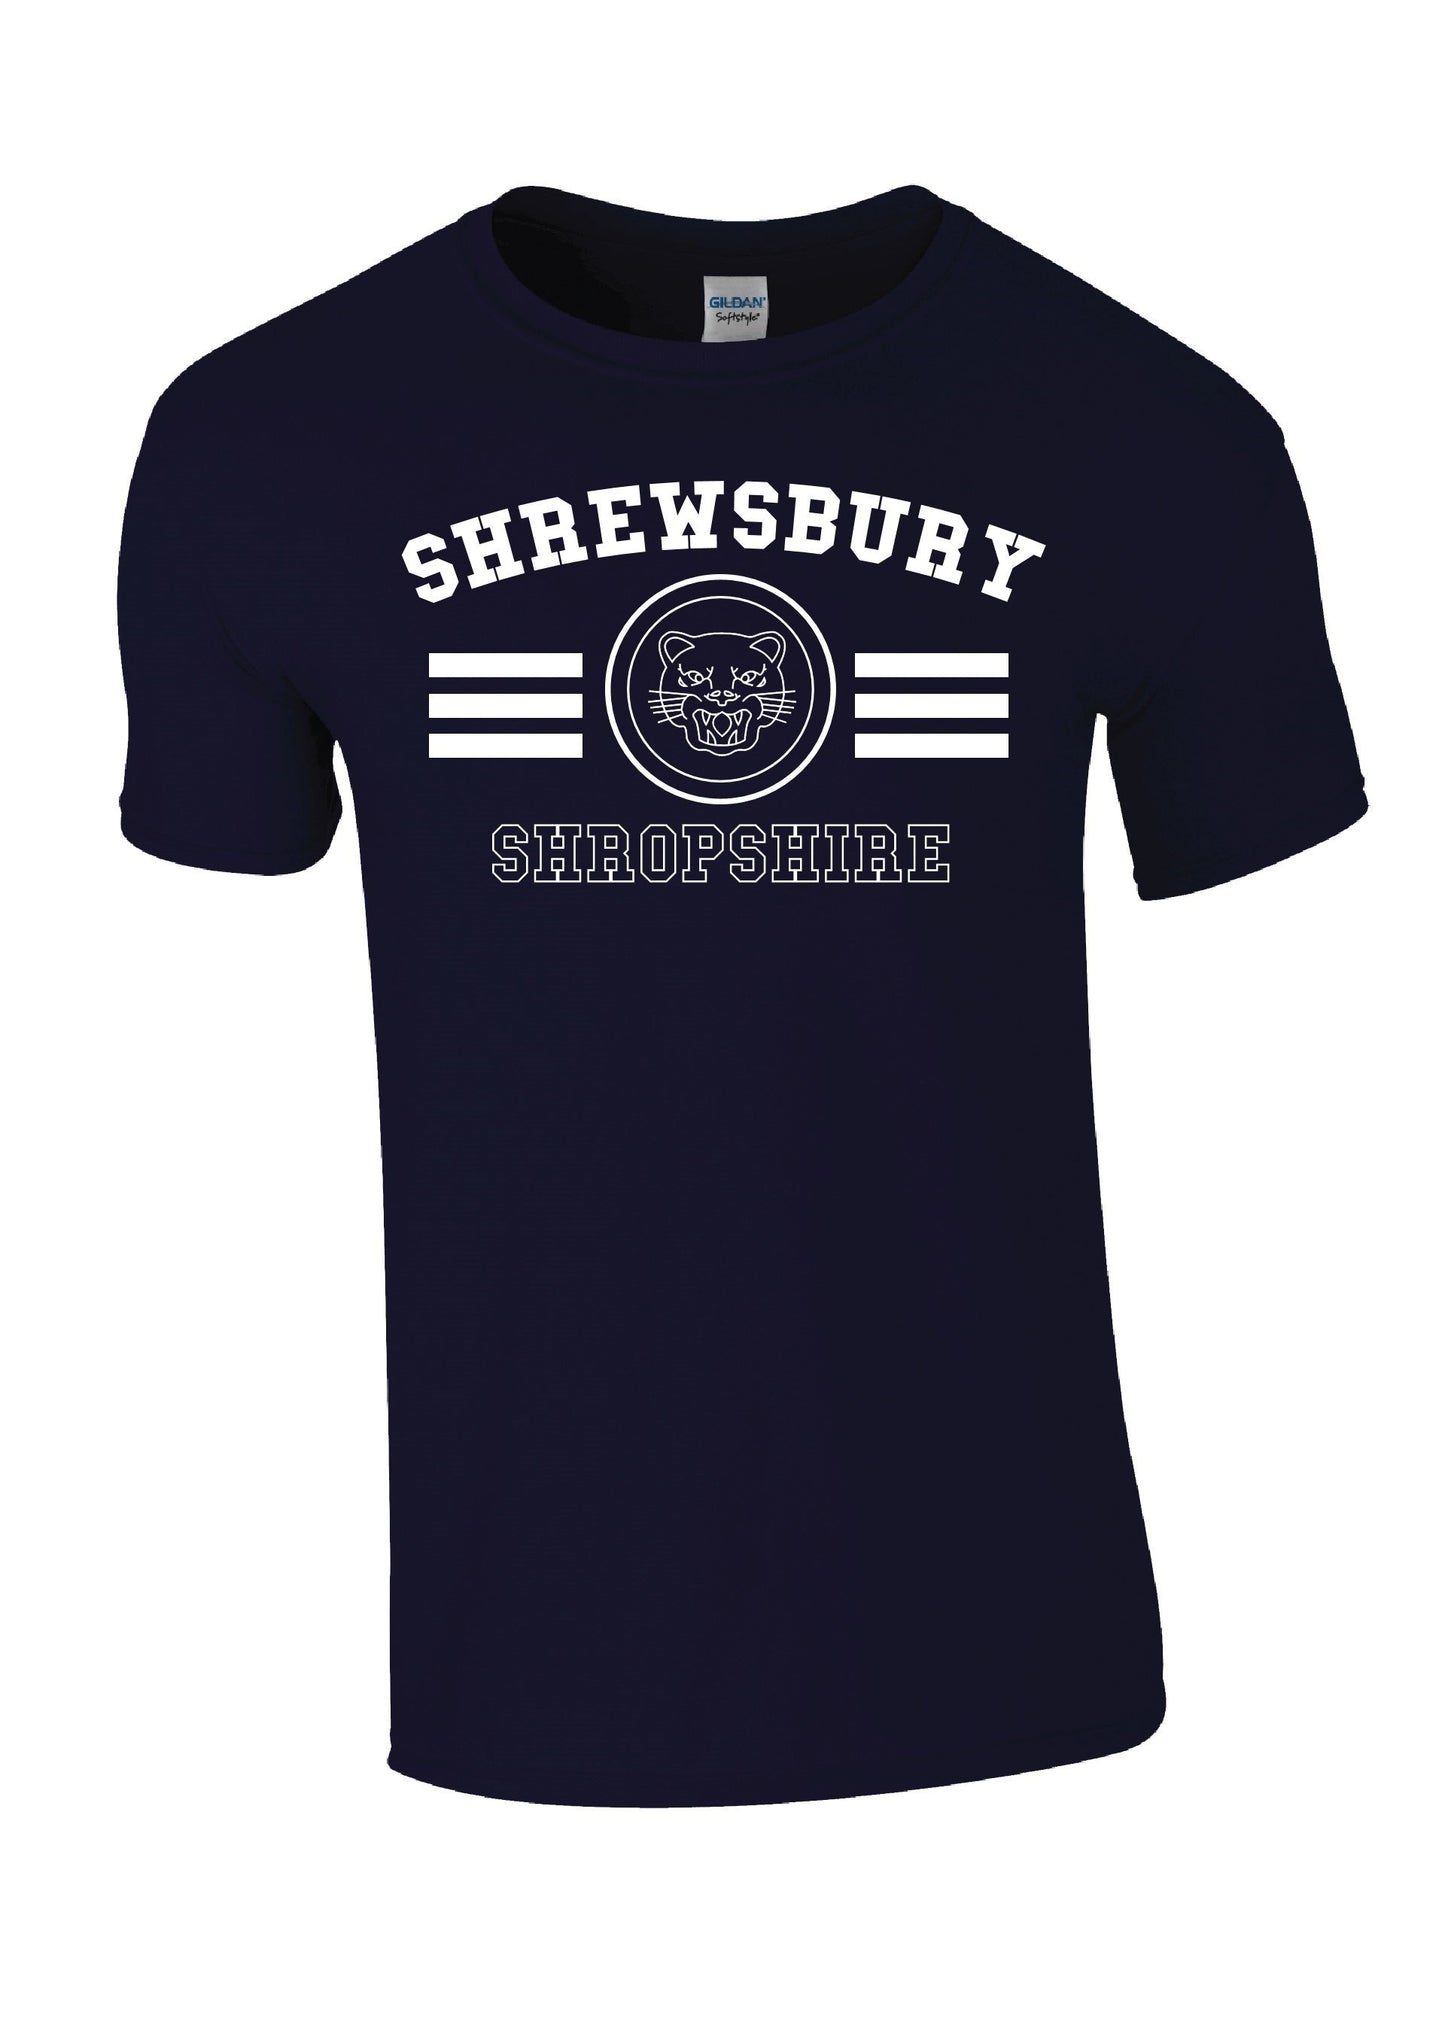 Shrewsbury Tiger T-shirt - Navy - 2XL